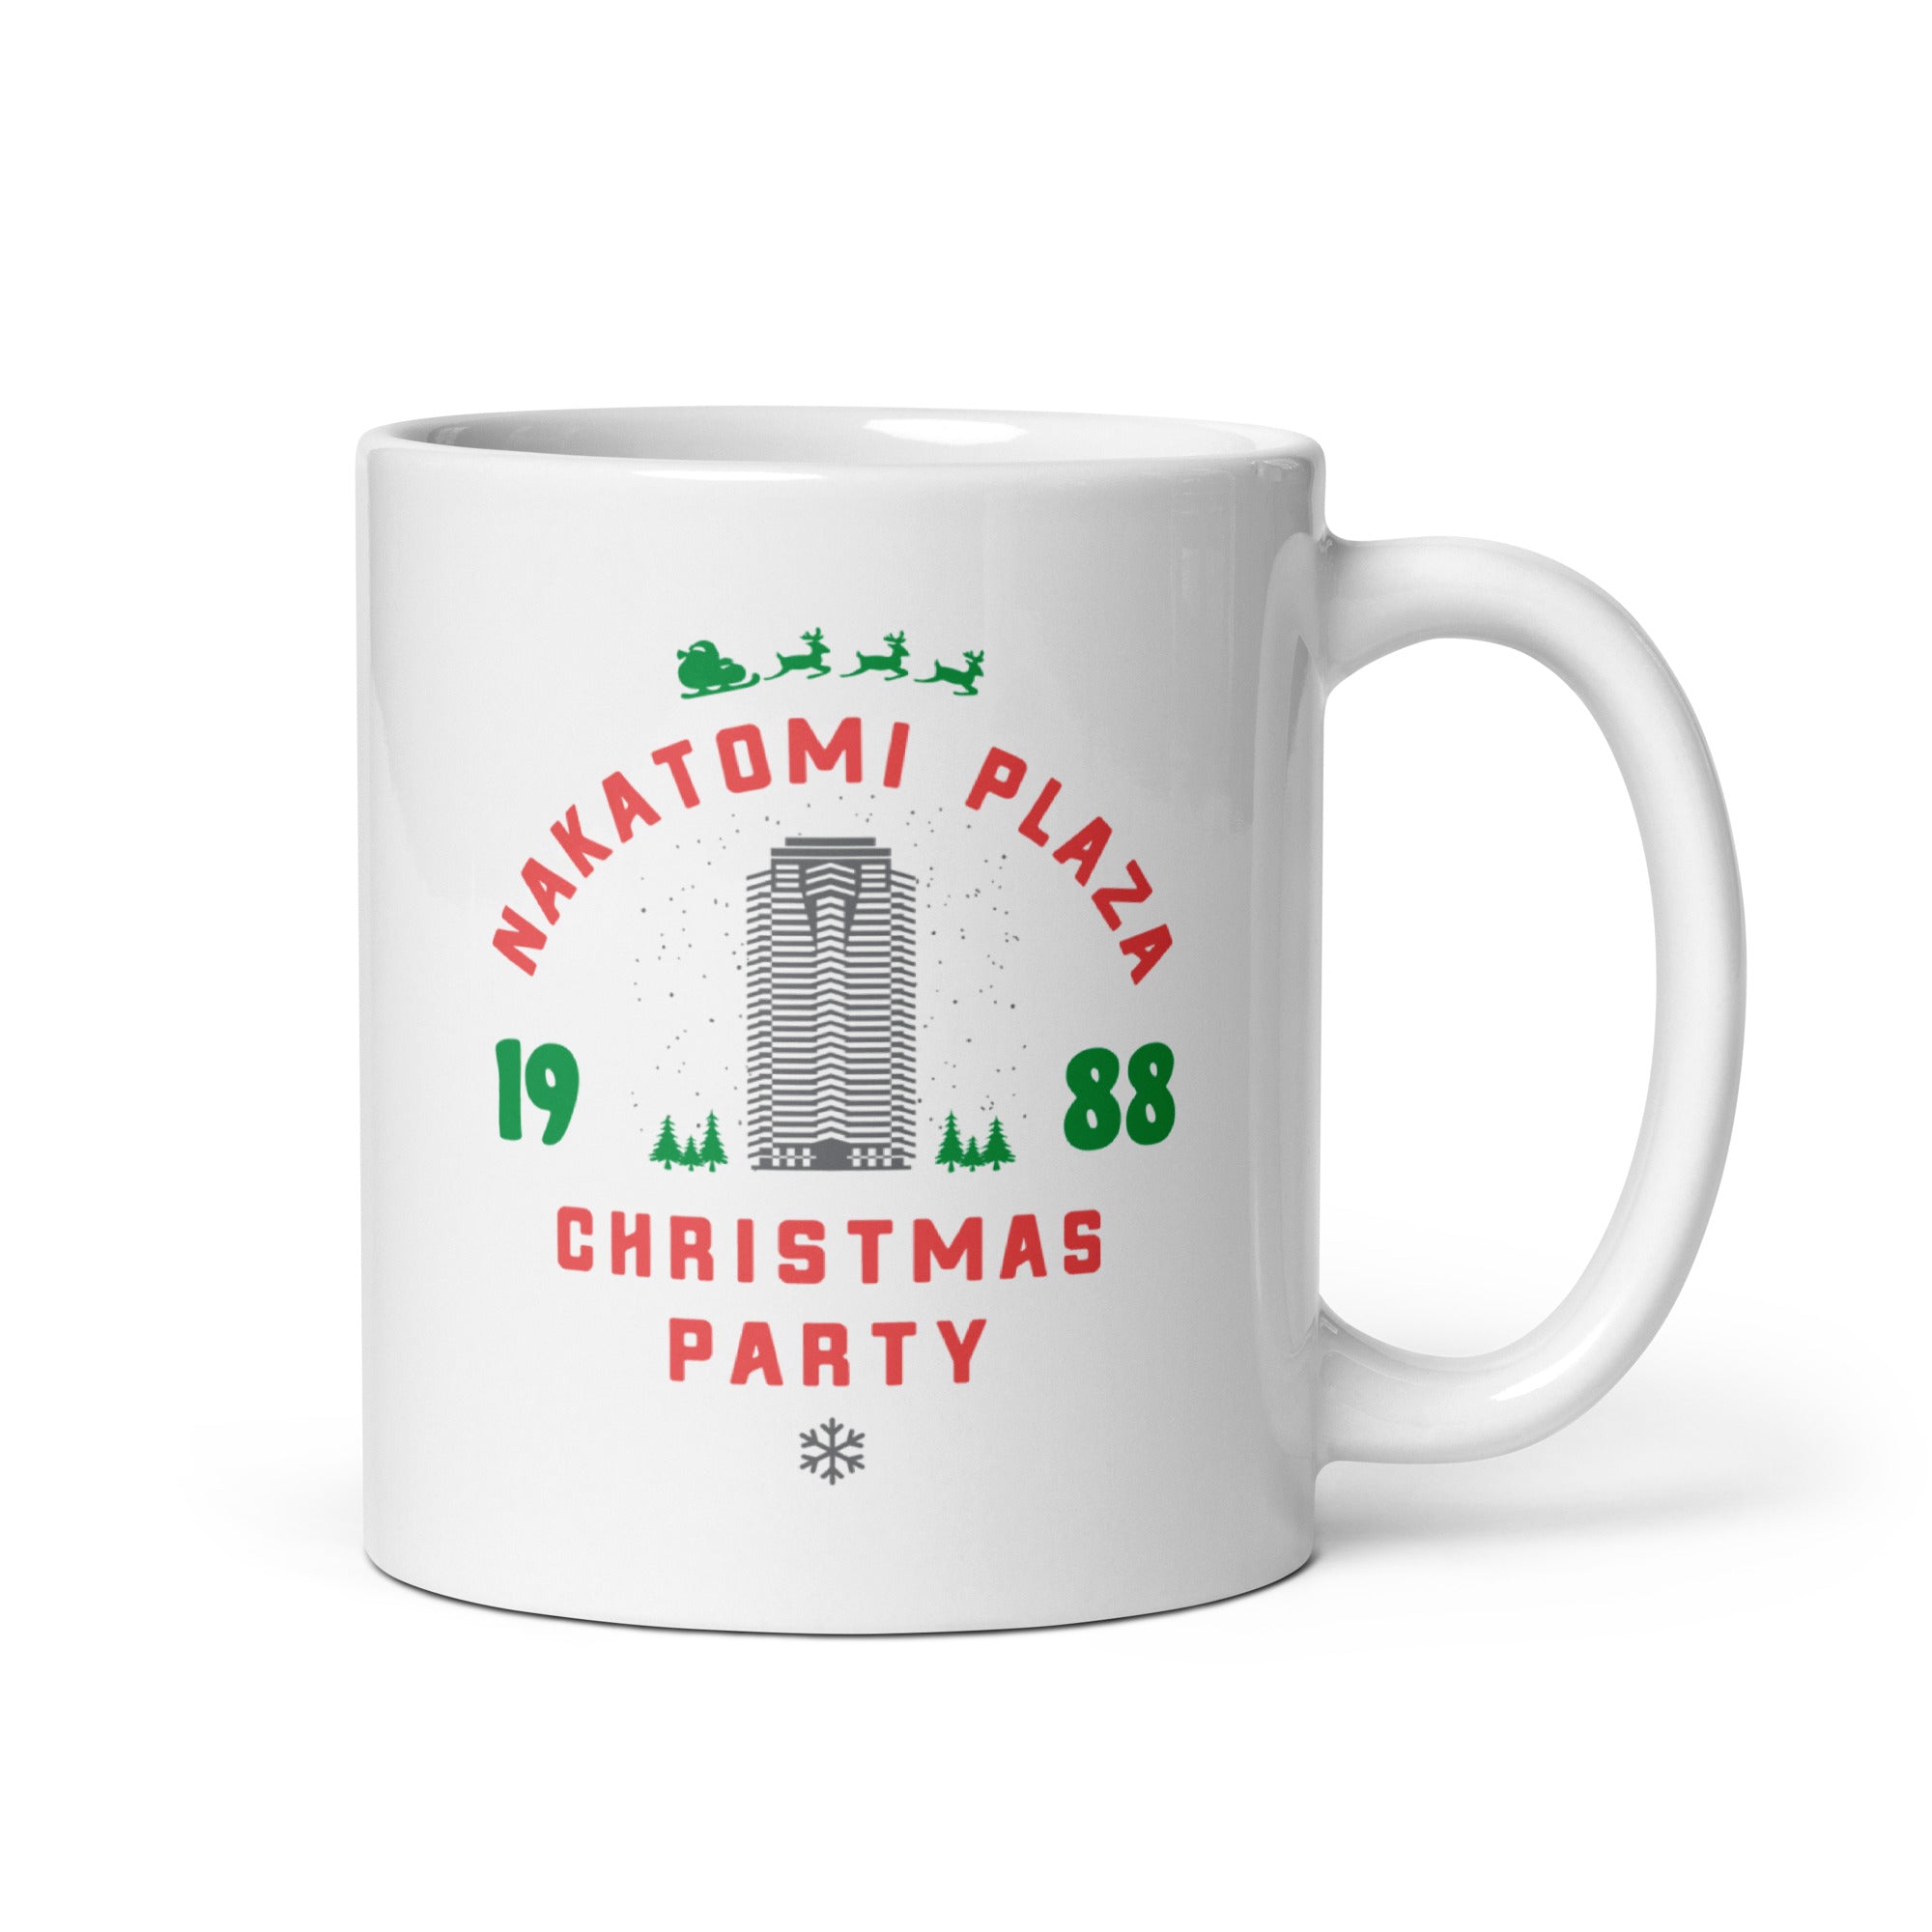 Nakatomi Plaza Christmas Party - 11oz Coffee Mug